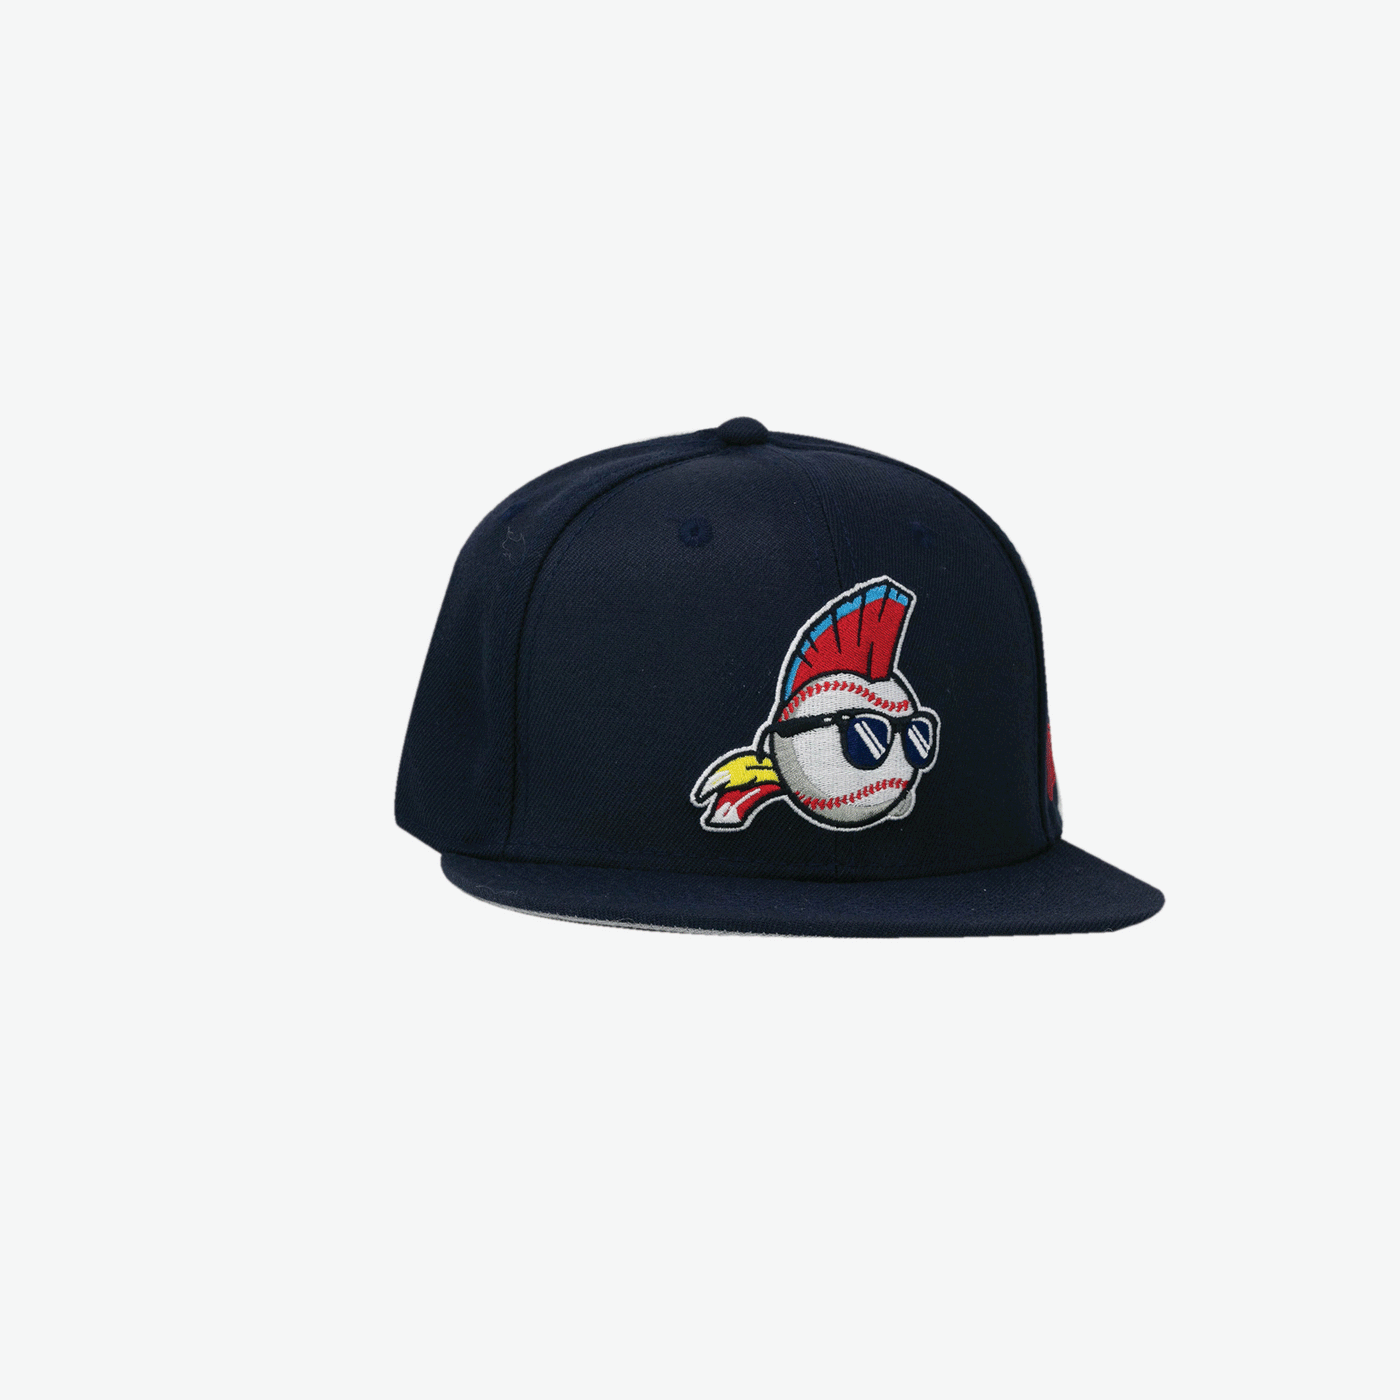 Major League Cap | Baseballism x Major League Collection 7